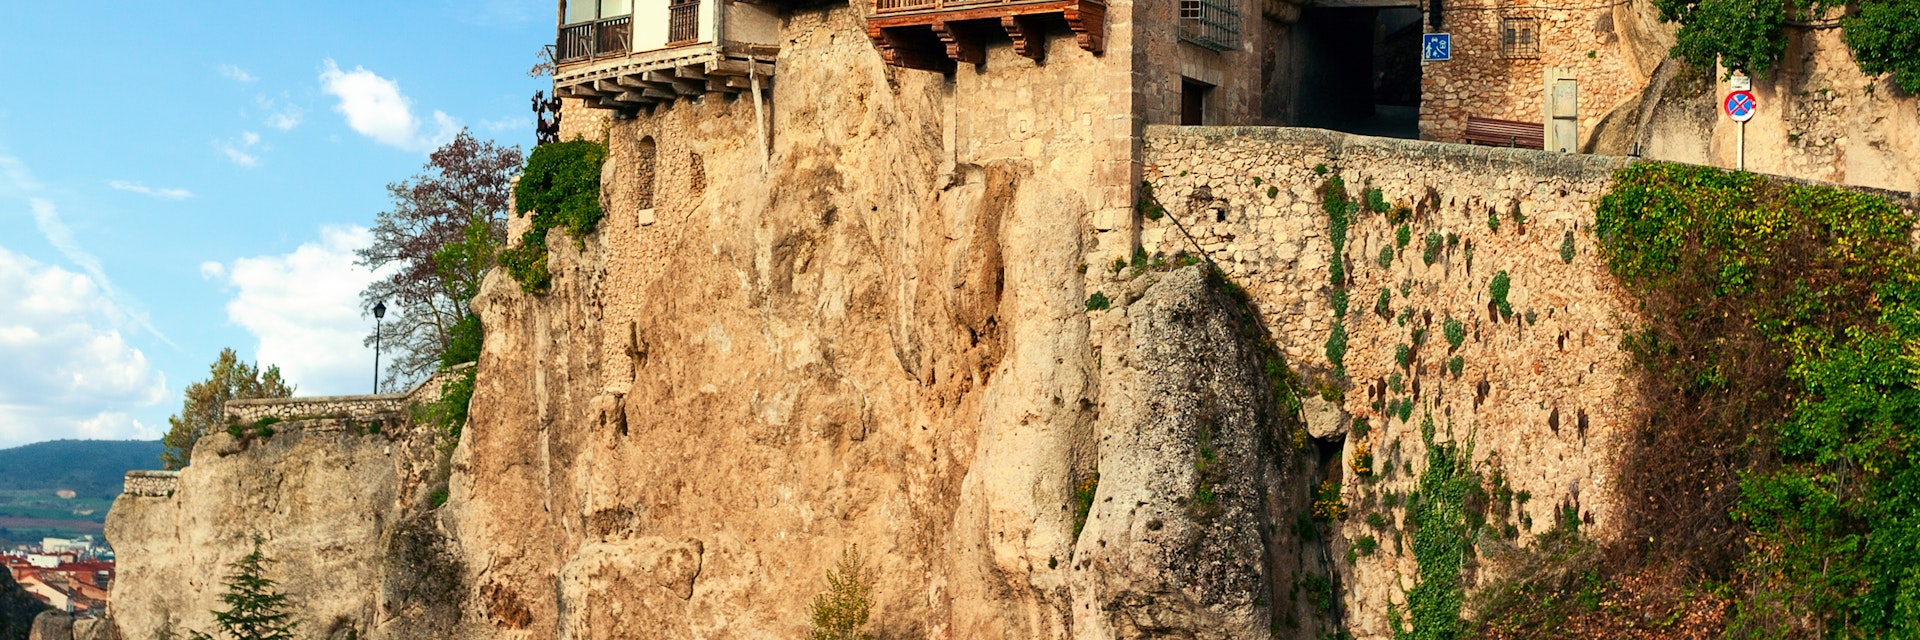 The Casas Colgadas, Hanging Houses in the medieval town of Cuenca, Castilla La Mancha, Spain.